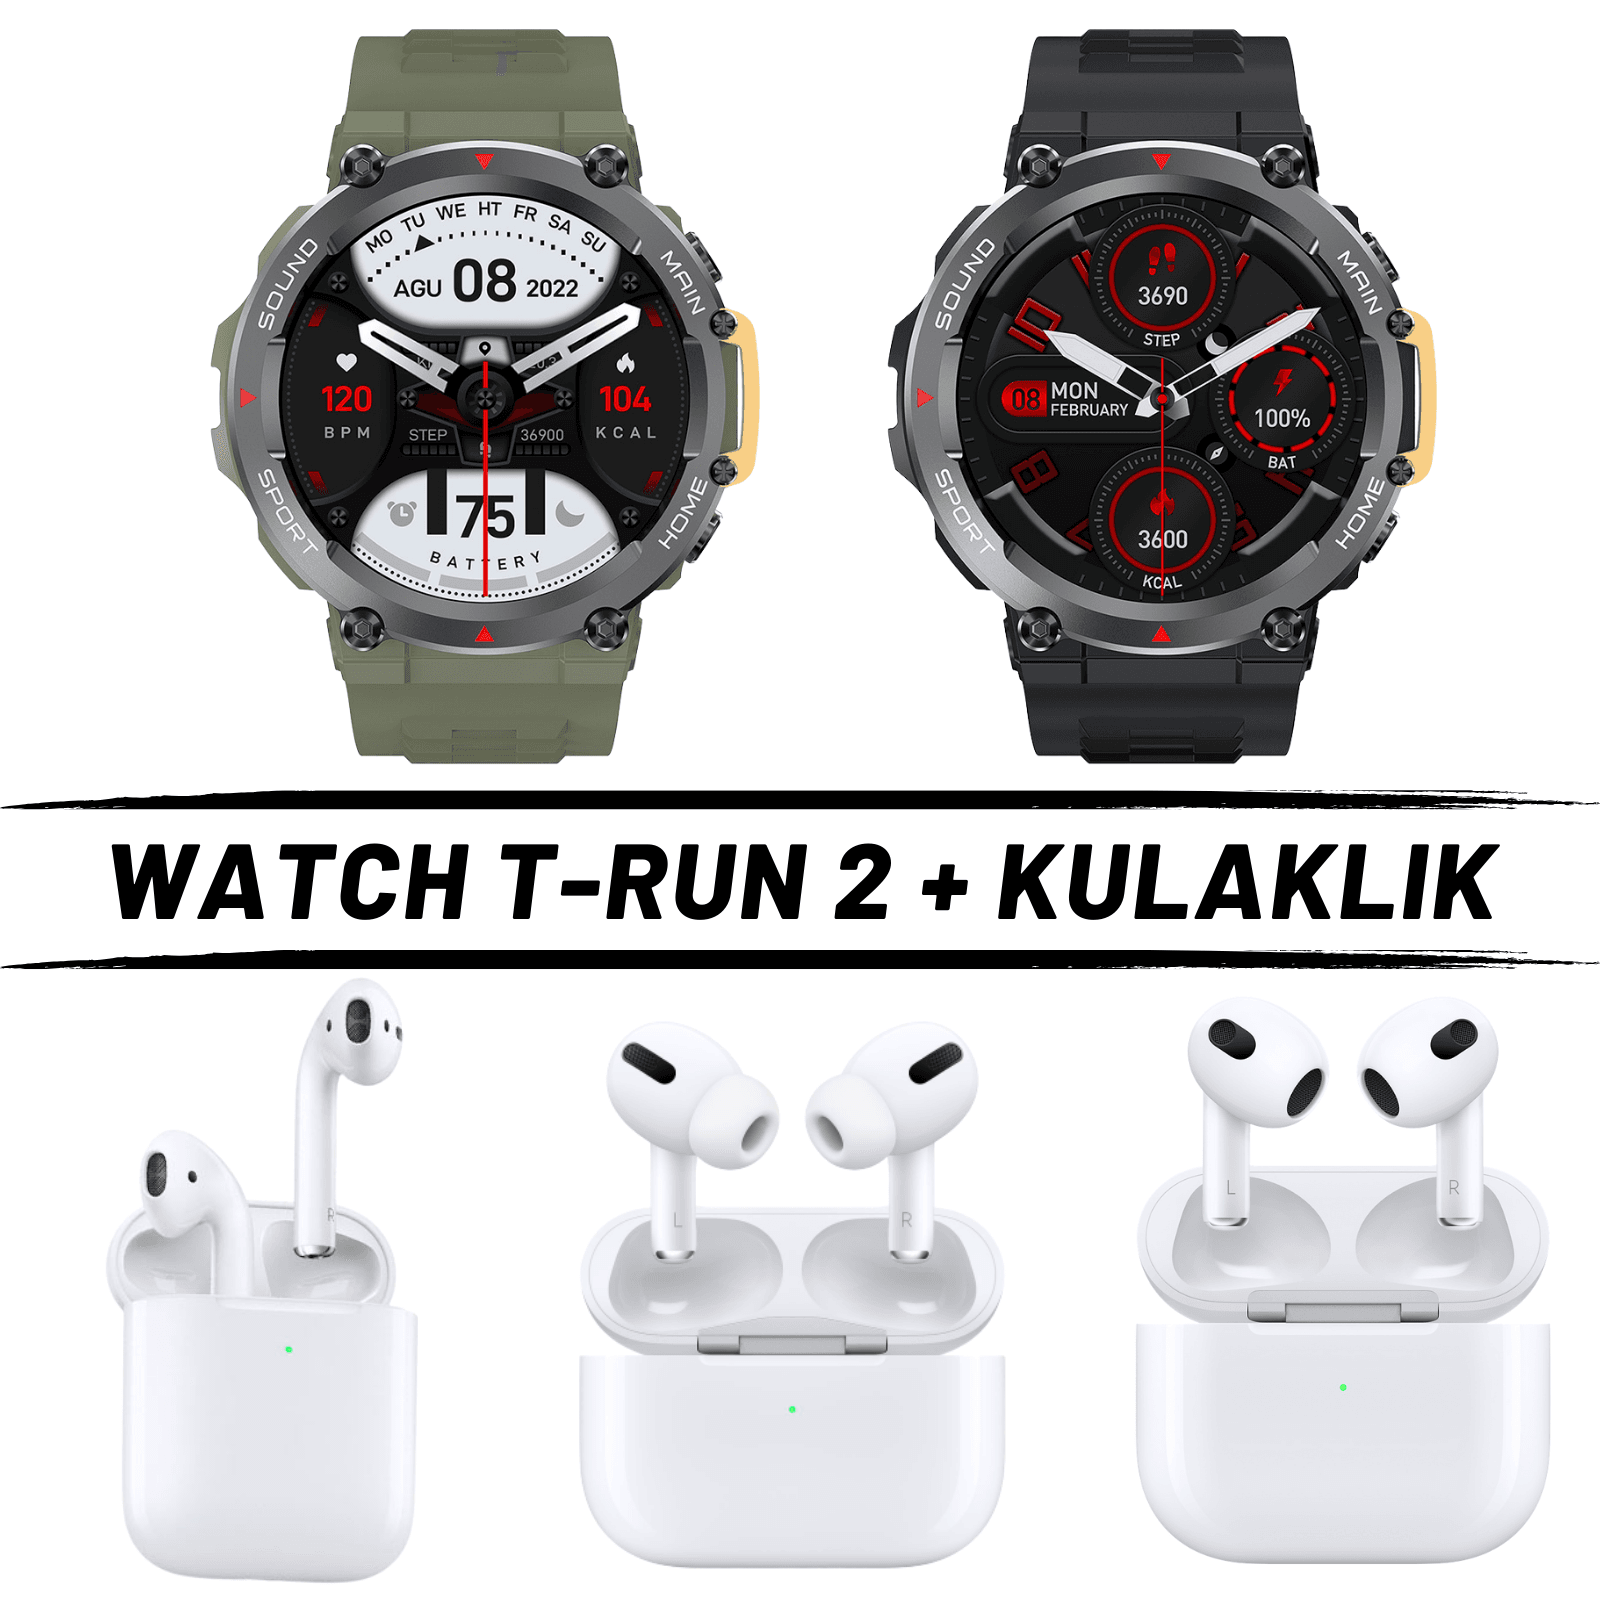 Watch T-Run 2 + Kulaklık